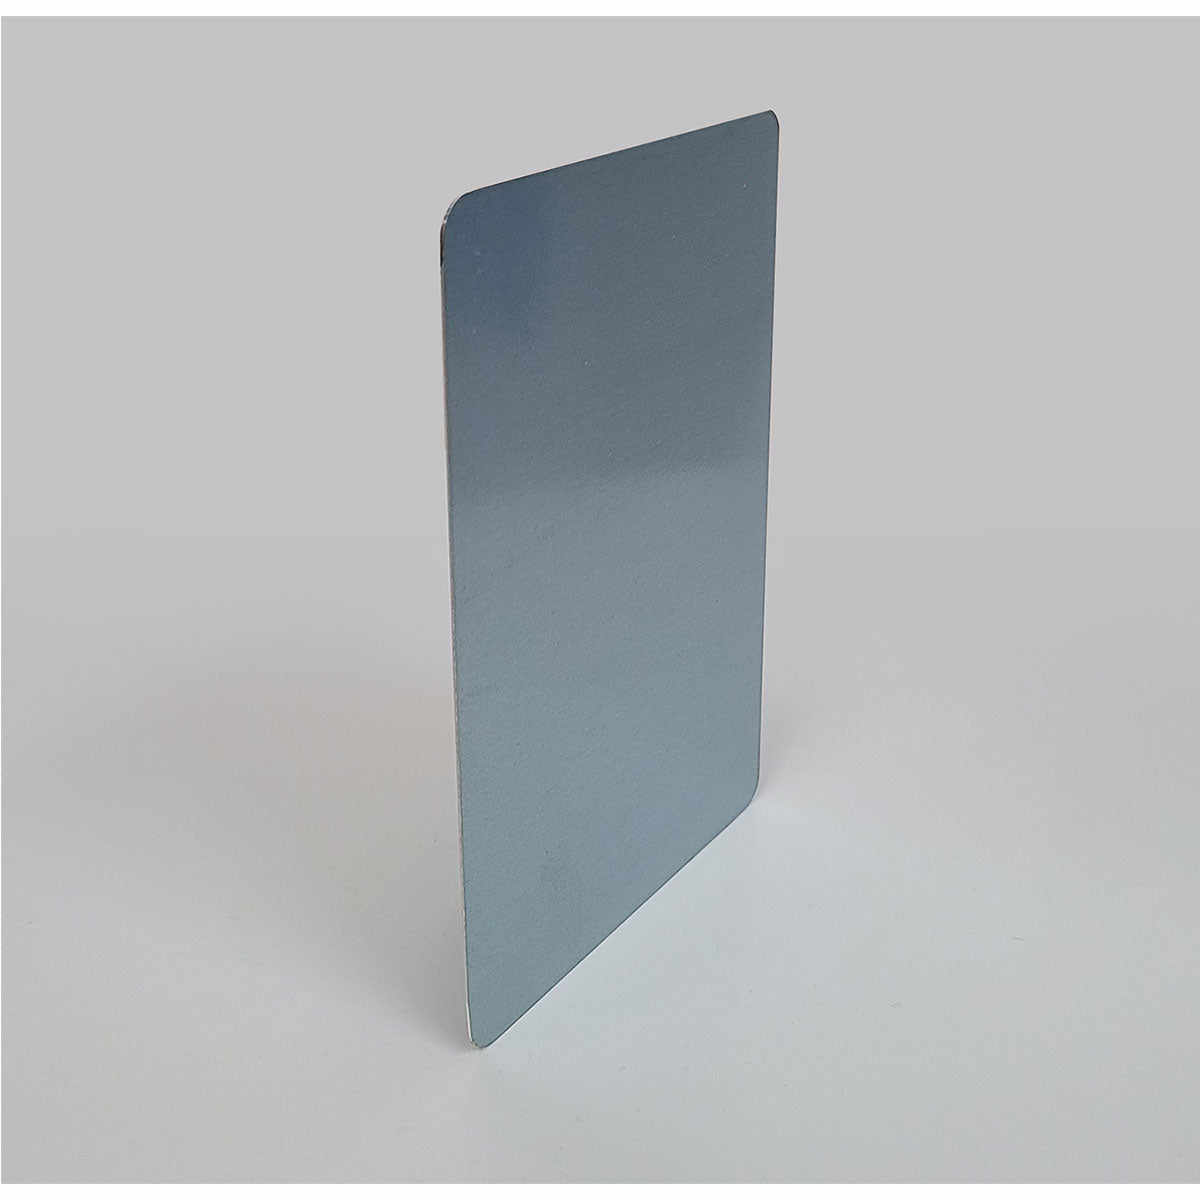 BUNDLE - PRIMAL - Metalowe kartki Greet Tin (zestaw 3 sztuk)